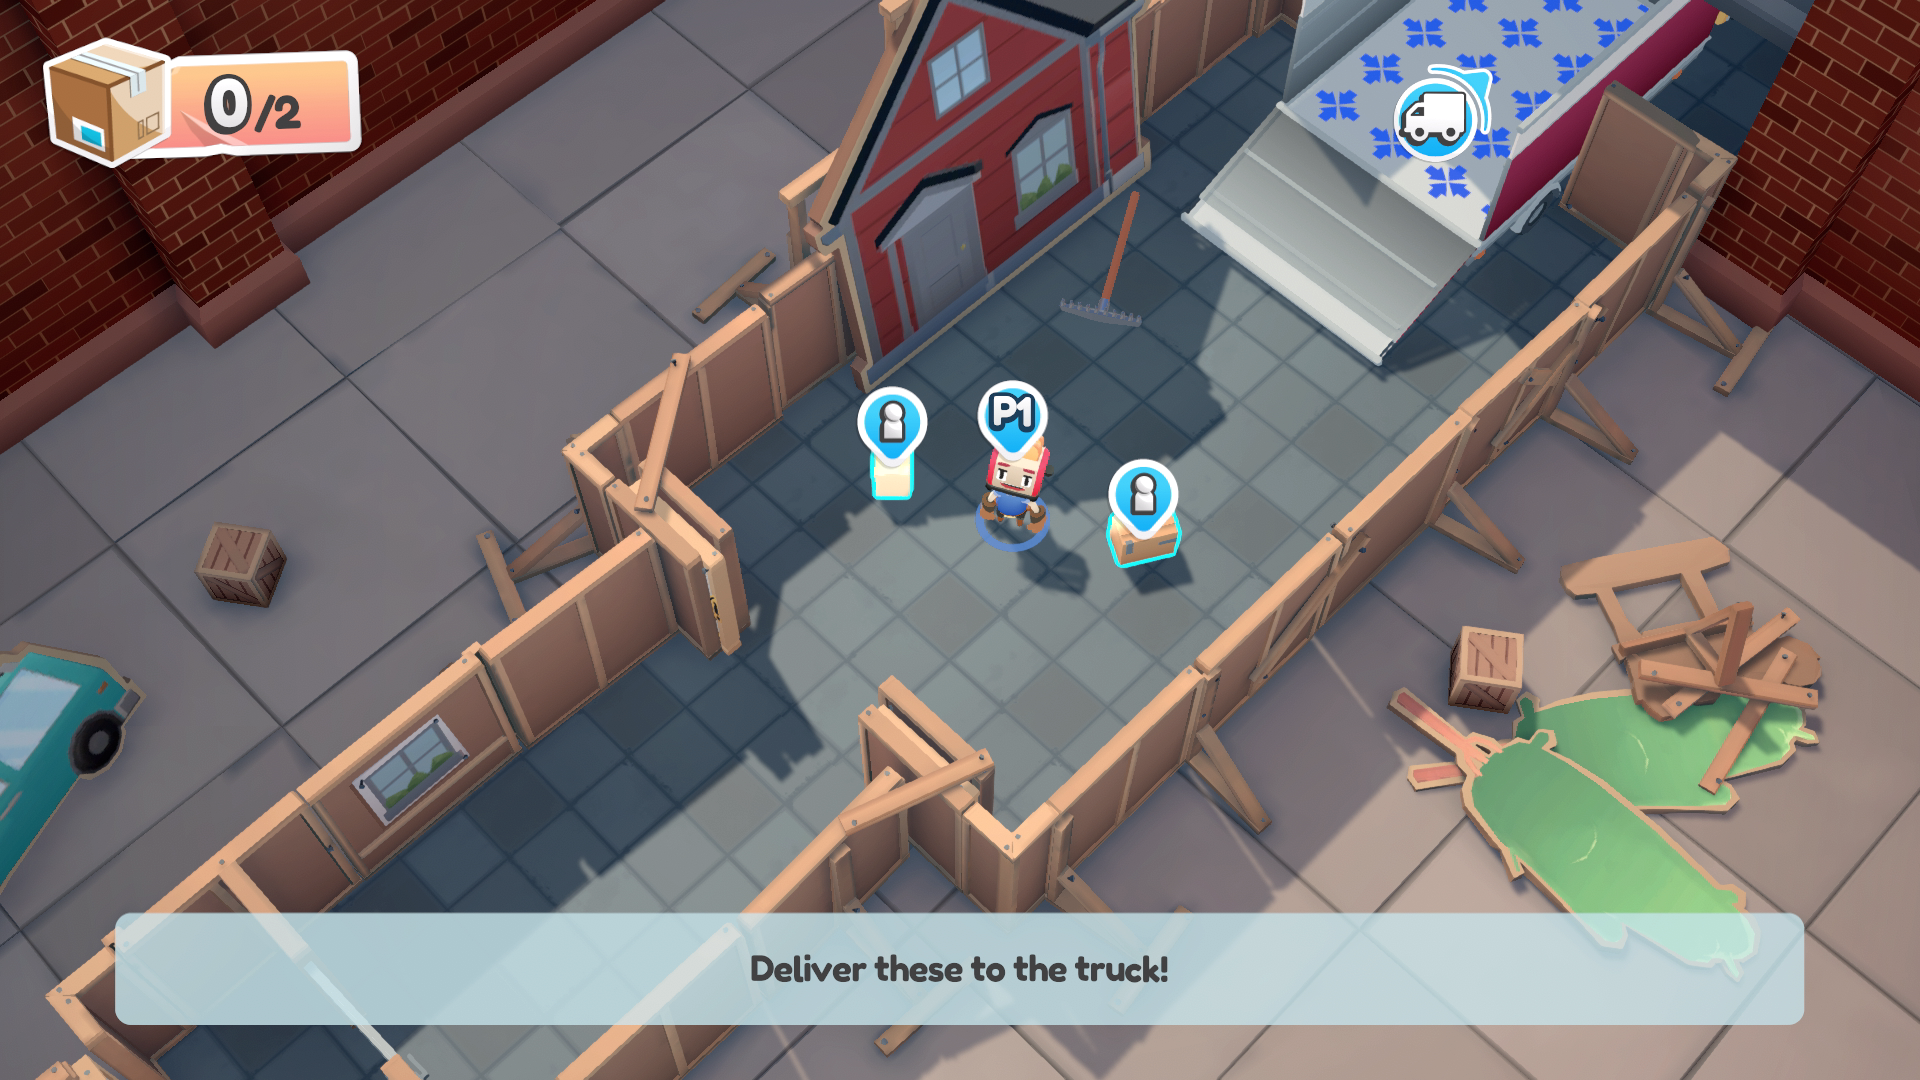 プレイアブルキャラクター、2 つの移動可能なアイテム、およびトラックがアイコンで強調表示されたMoving Outのスクリーンショット。